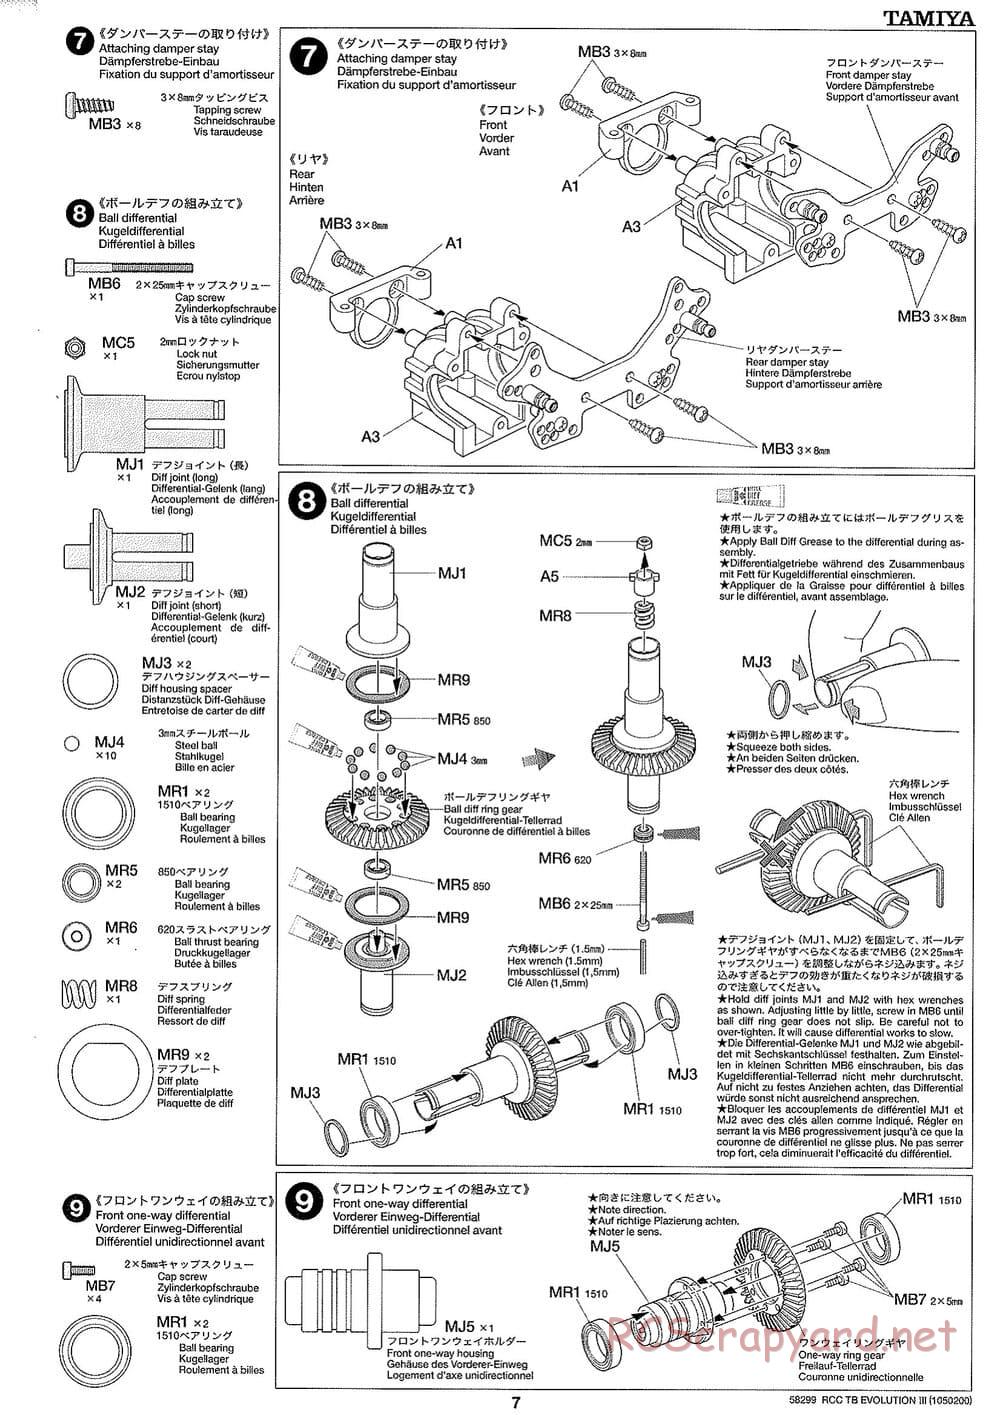 Tamiya - TB Evolution III Chassis - Manual - Page 8